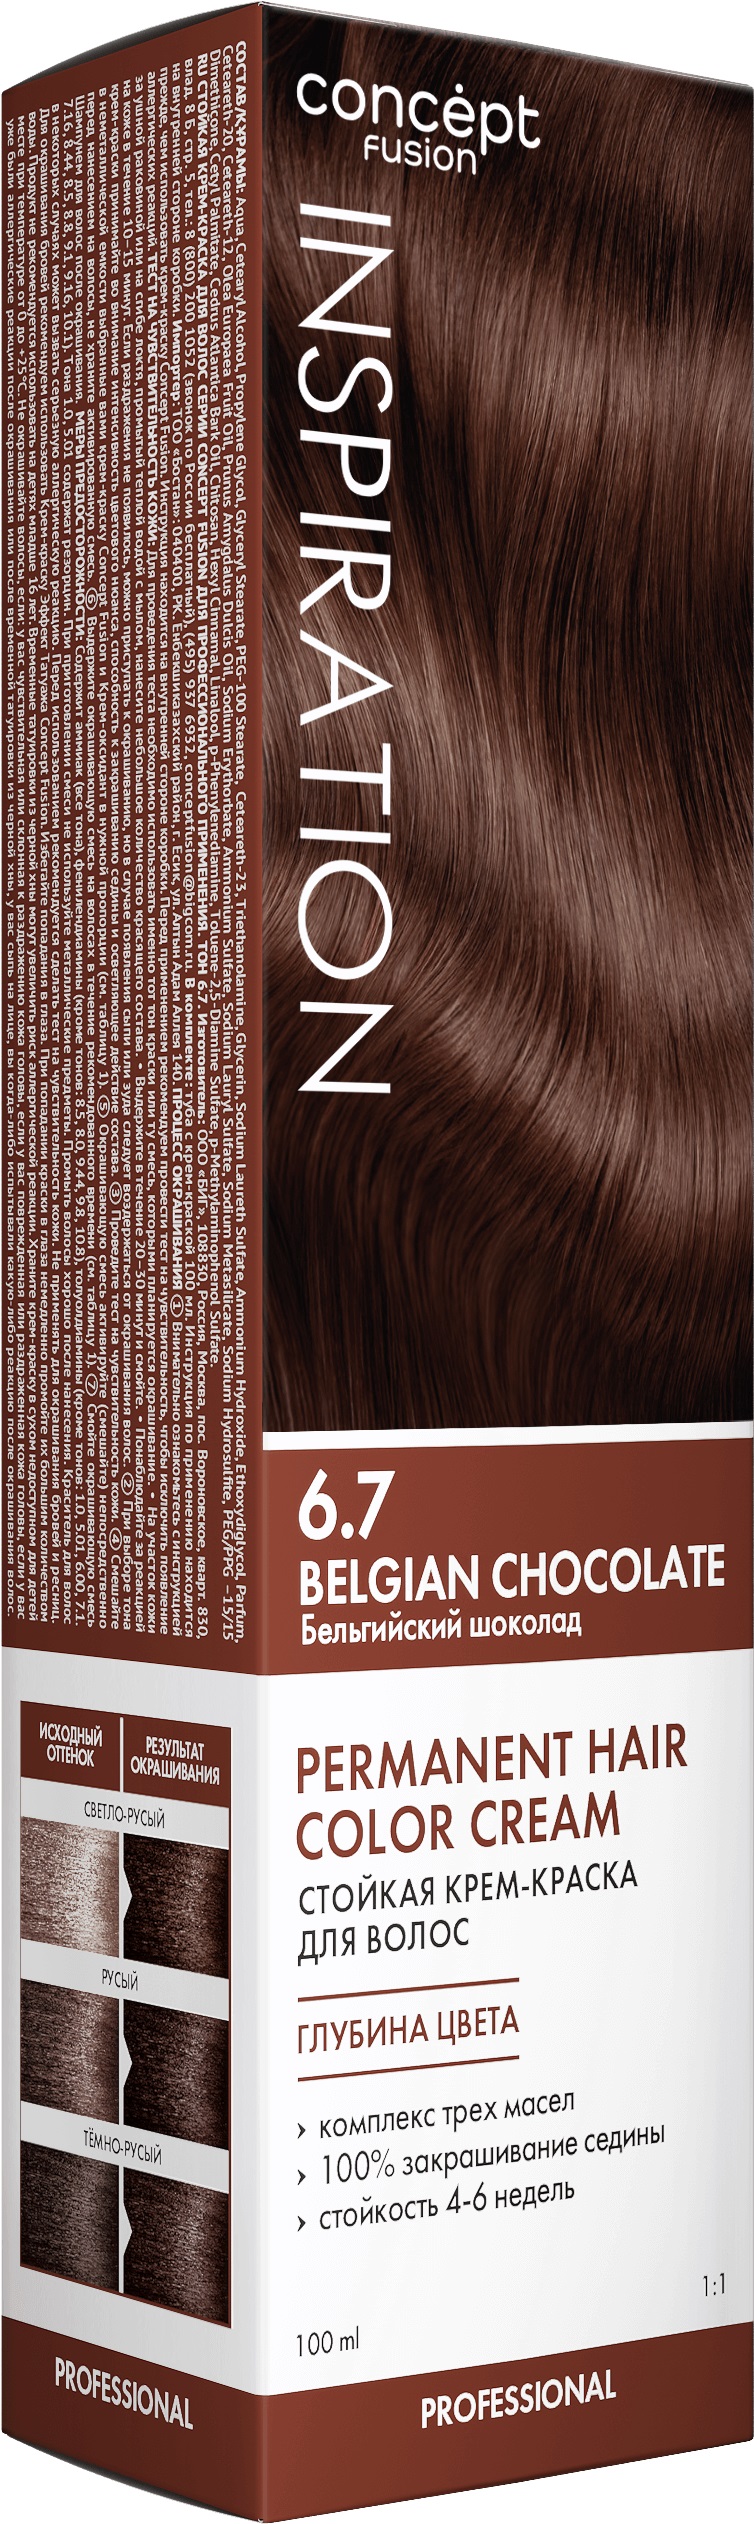 Крем-краска Concept Fusion Inspiration бельгийский шоколад, №6.7, 100 мл крем краска concept fusion inspiration эспрессо коричневый 7 00 100 мл